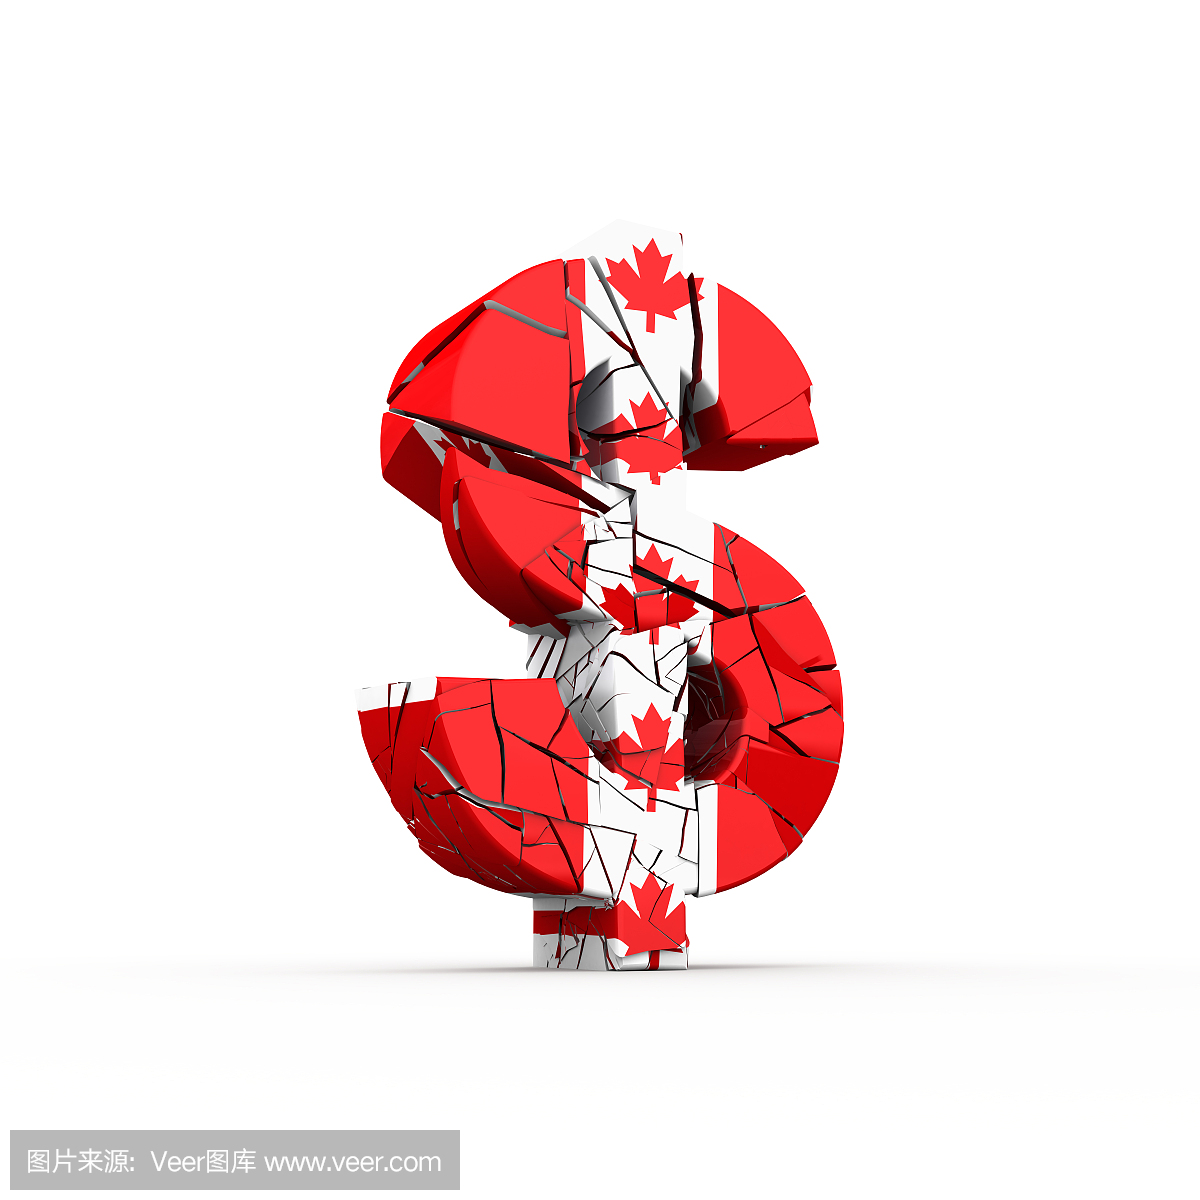 加拿大货币,加元,加拿大钞票,加圆